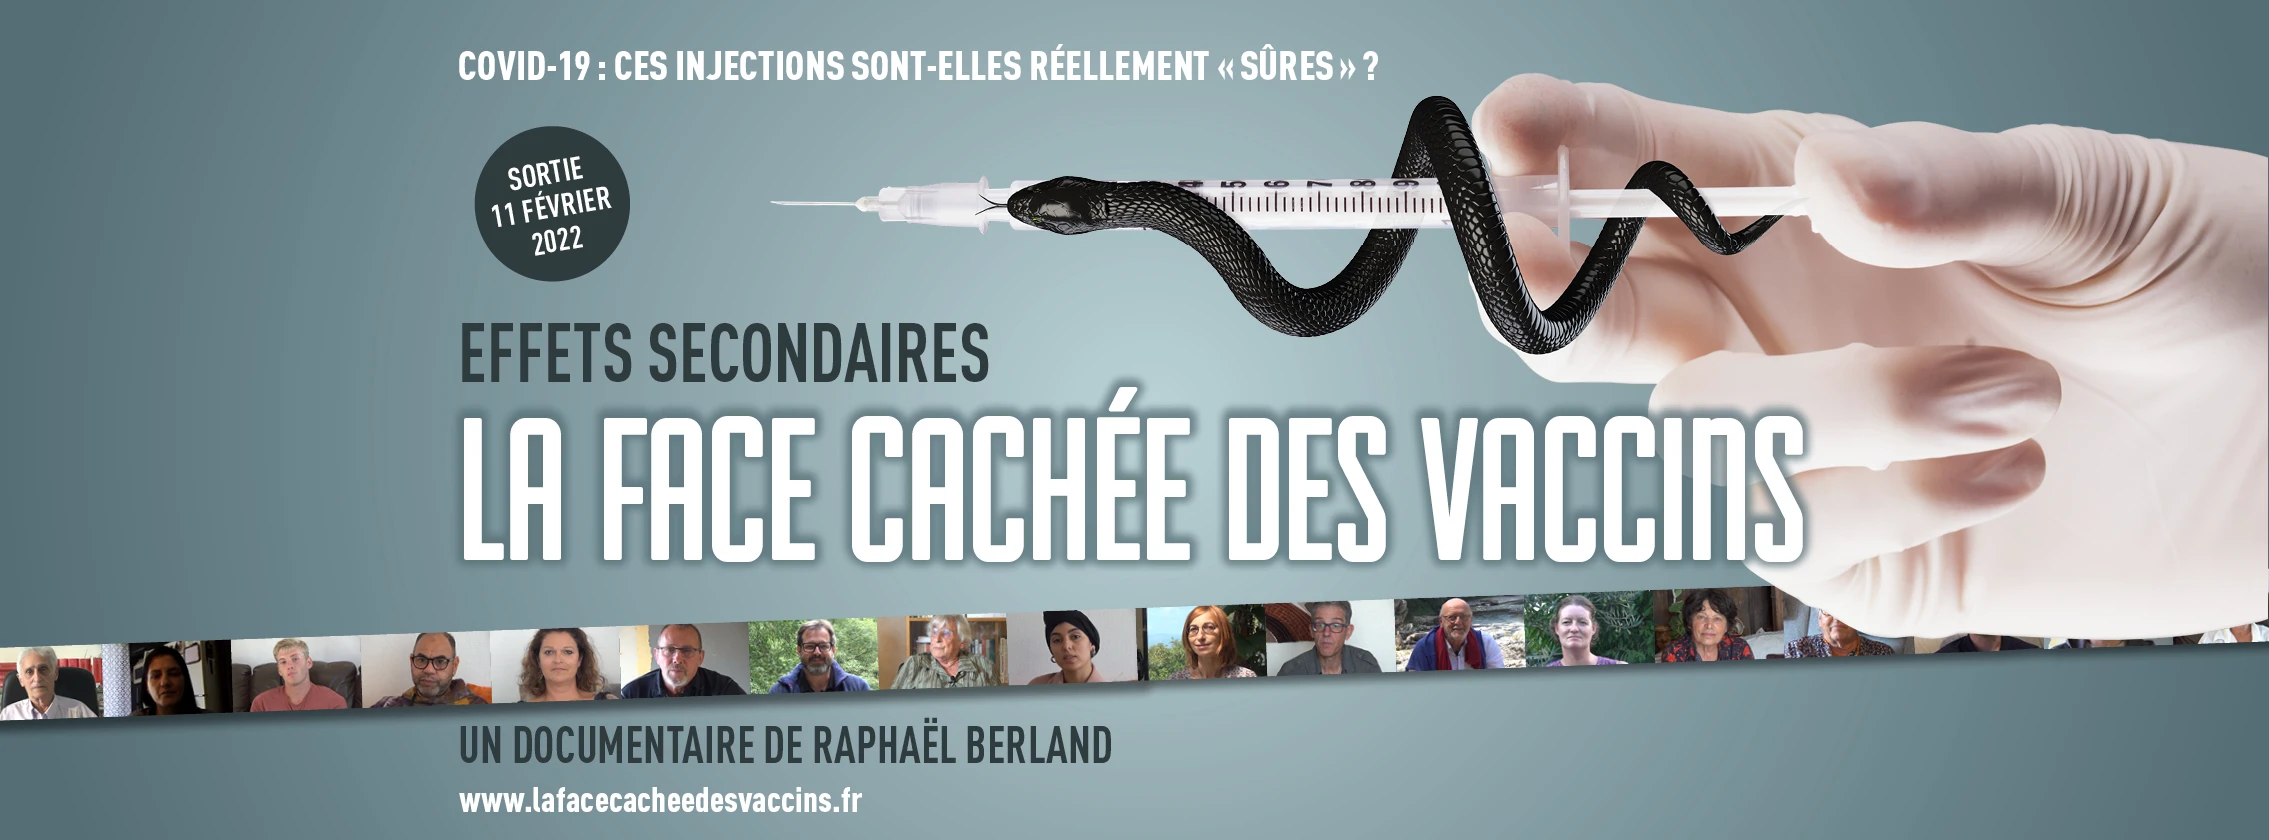 Effets secondaires : la face cachée des vaccins – Documentaire (projection & débat) – OFFICIEL